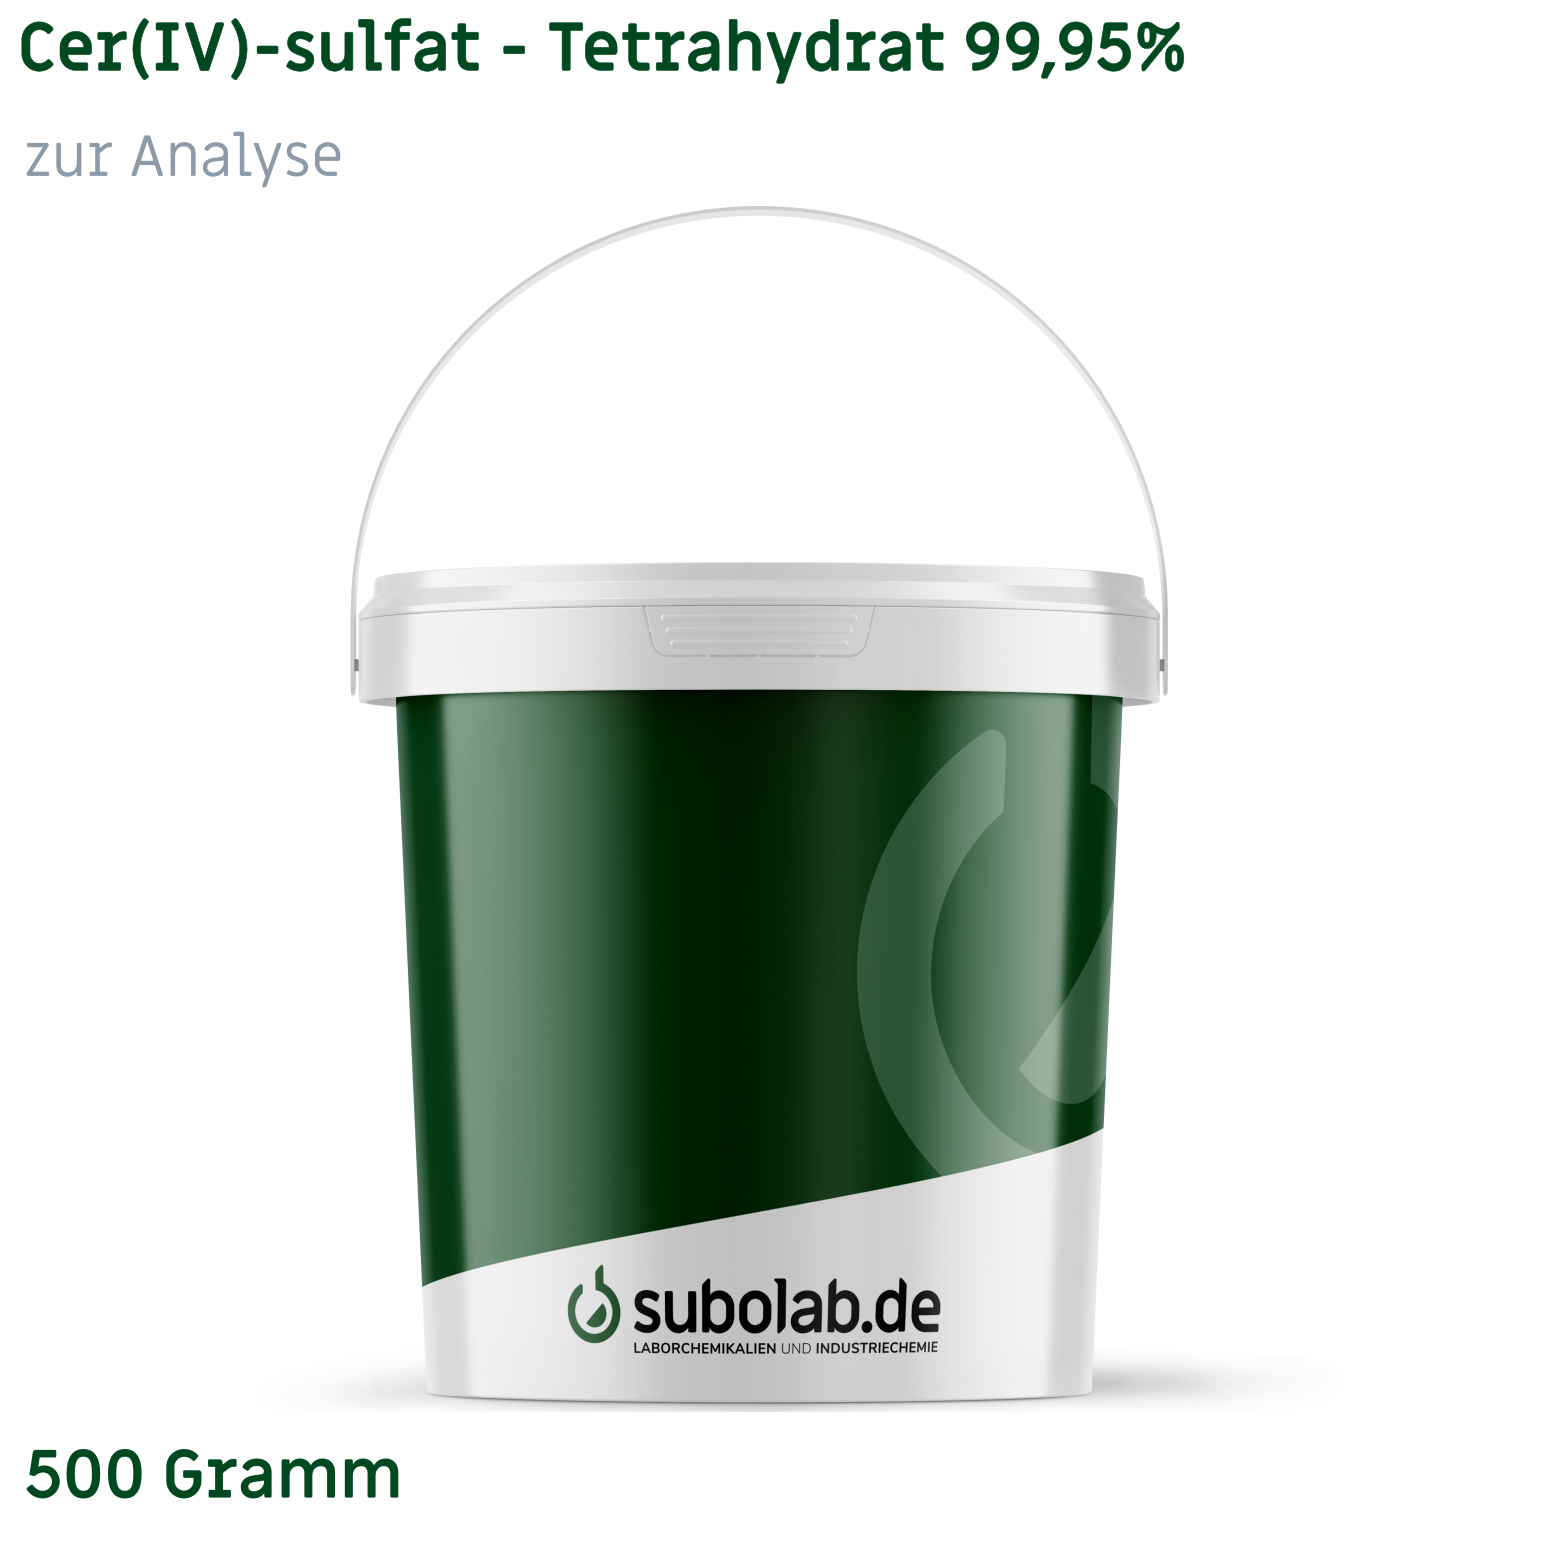 Bild von Cer(IV)-sulfat - Tetrahydrat 99,95% zur Analyse (500 Gramm)